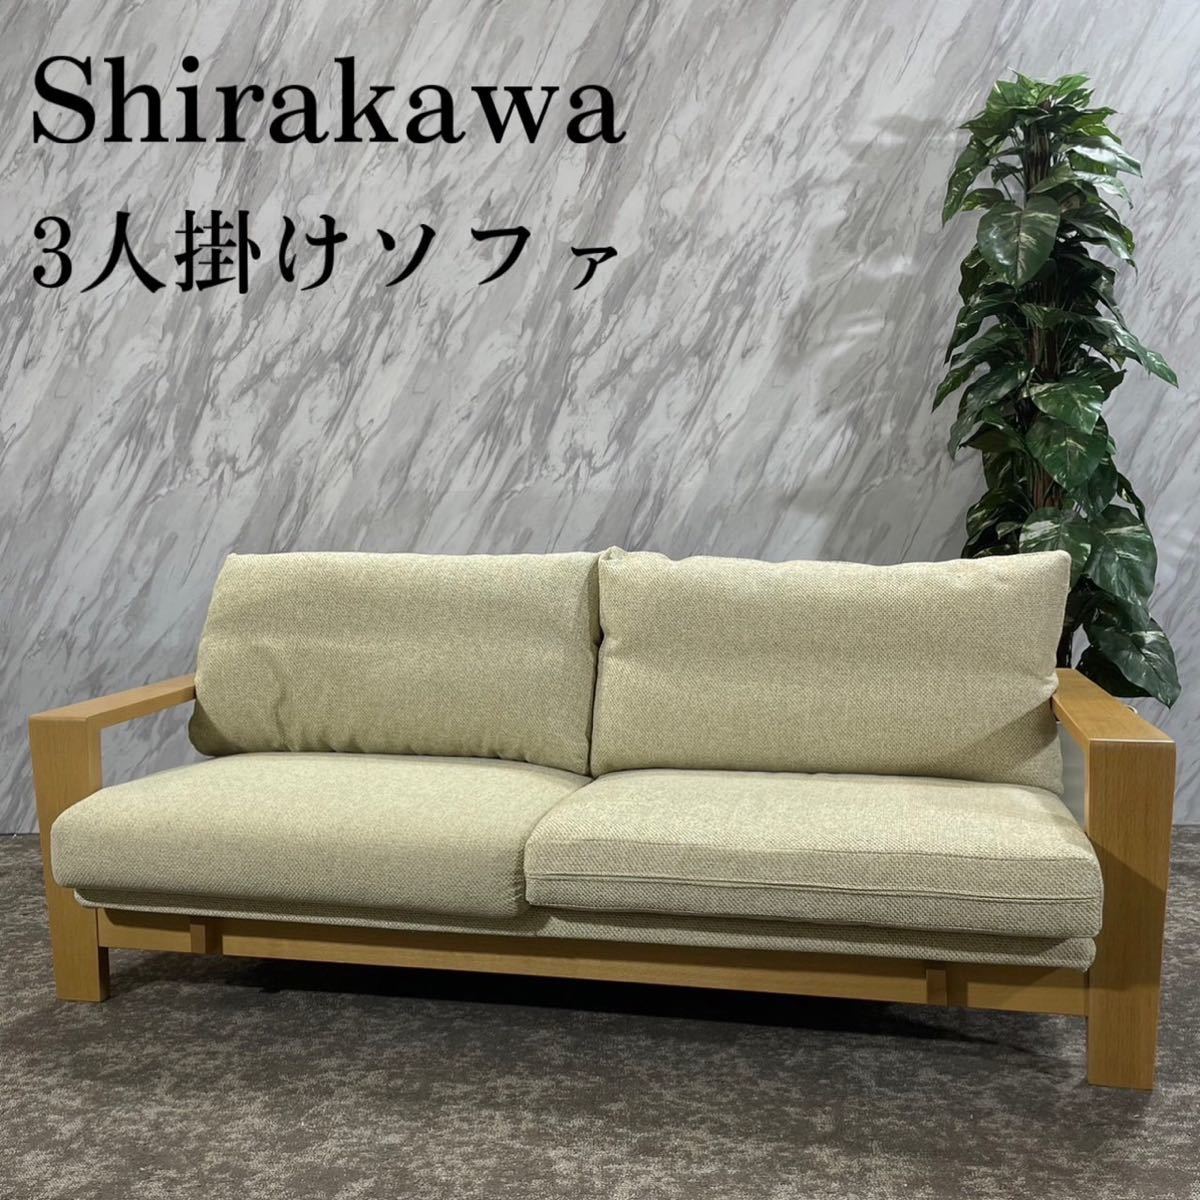 Shirakawa シラカワ 飛騨の家具 SL-R2483 3人掛け F260 | mesitam.ac.in